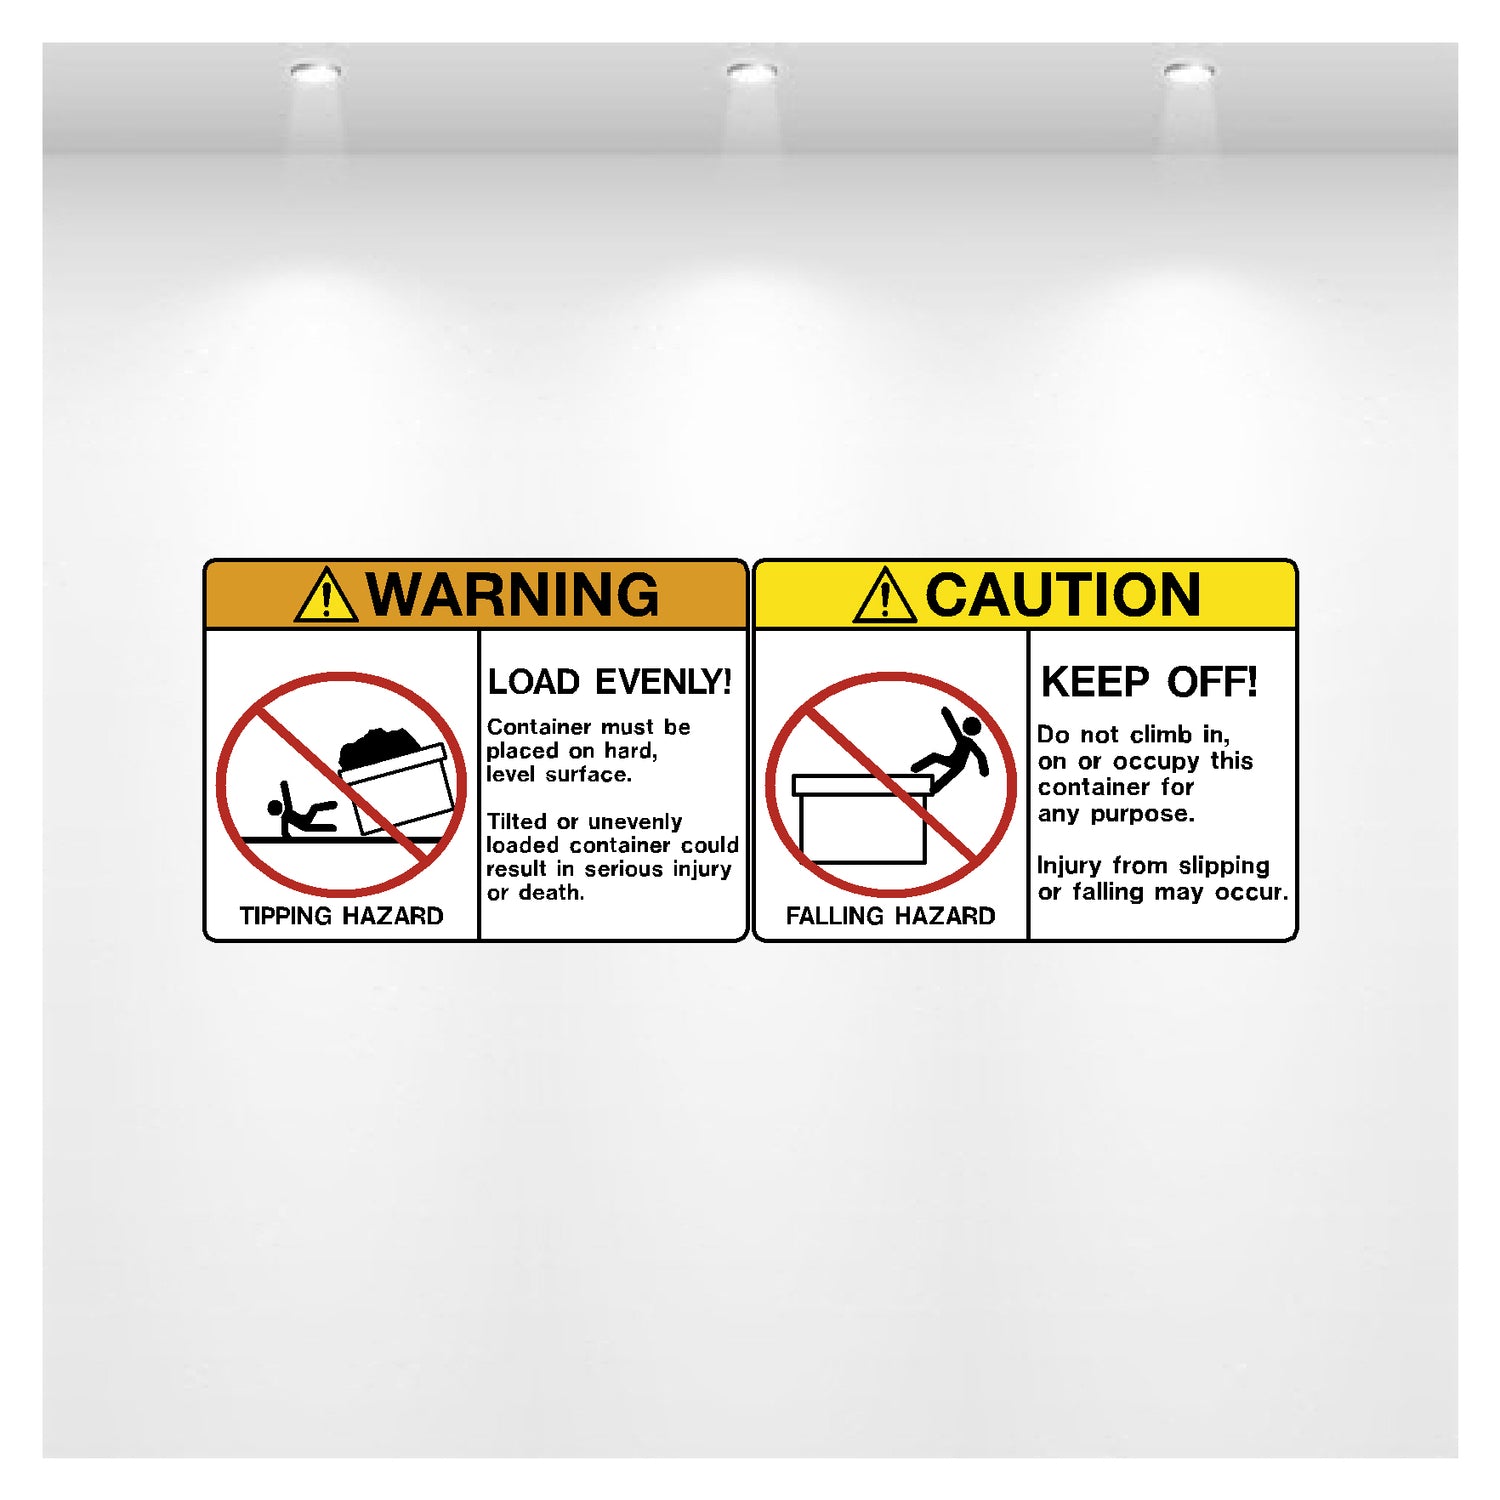 Decal - Caution Falling Hazard & Waring Tipping Hazard